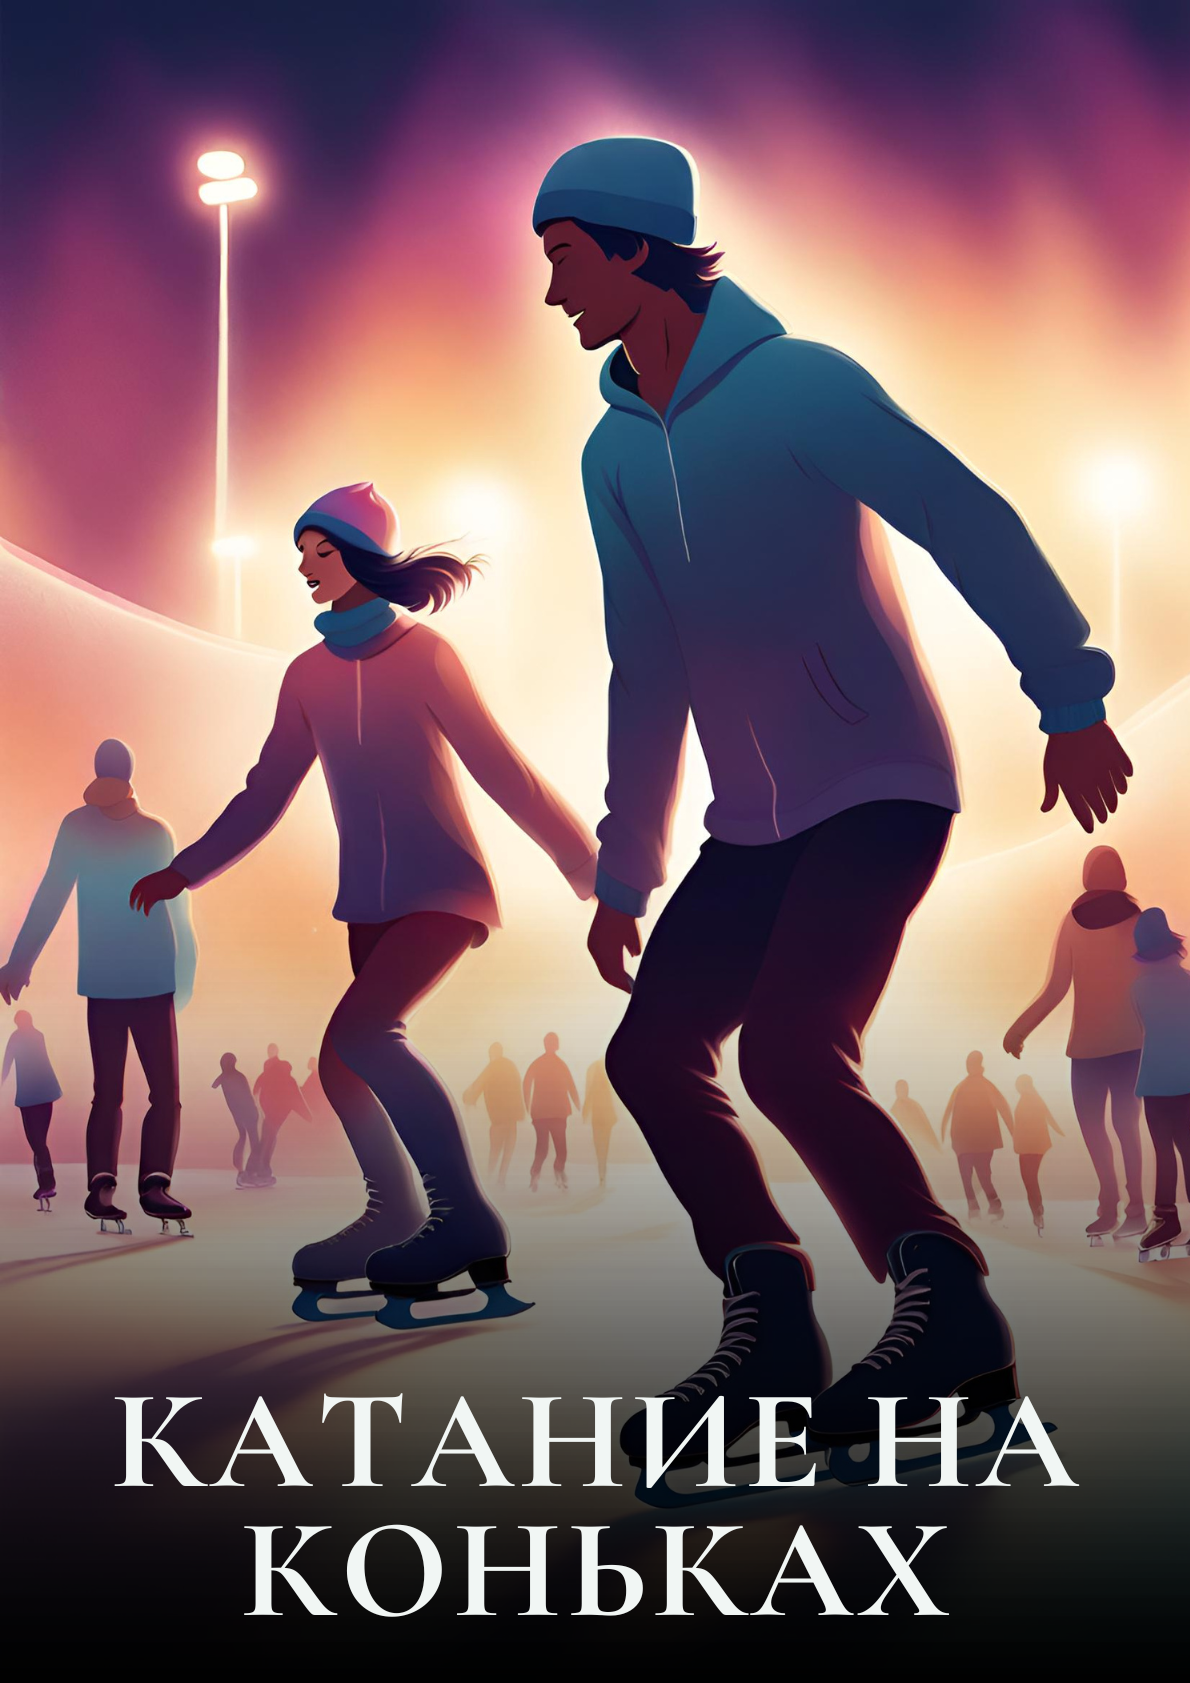 Фото - постер к Рекомендуем Катание на коньках на kudapoiti.by